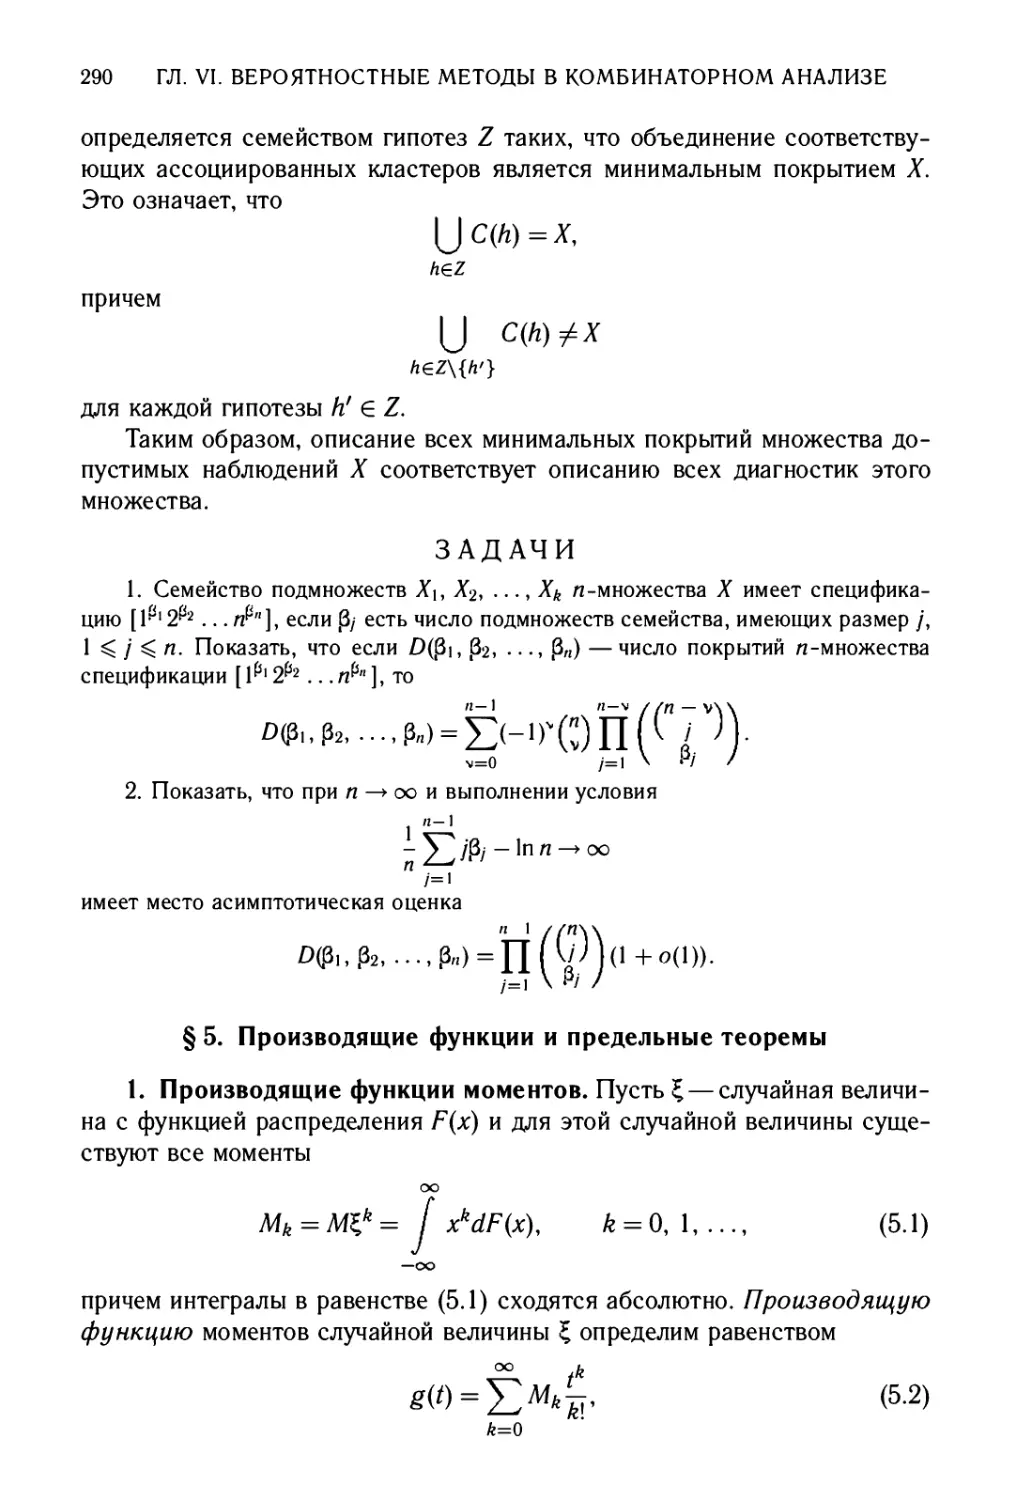 Задачи
§5. Производящие функции и предельные теоремы